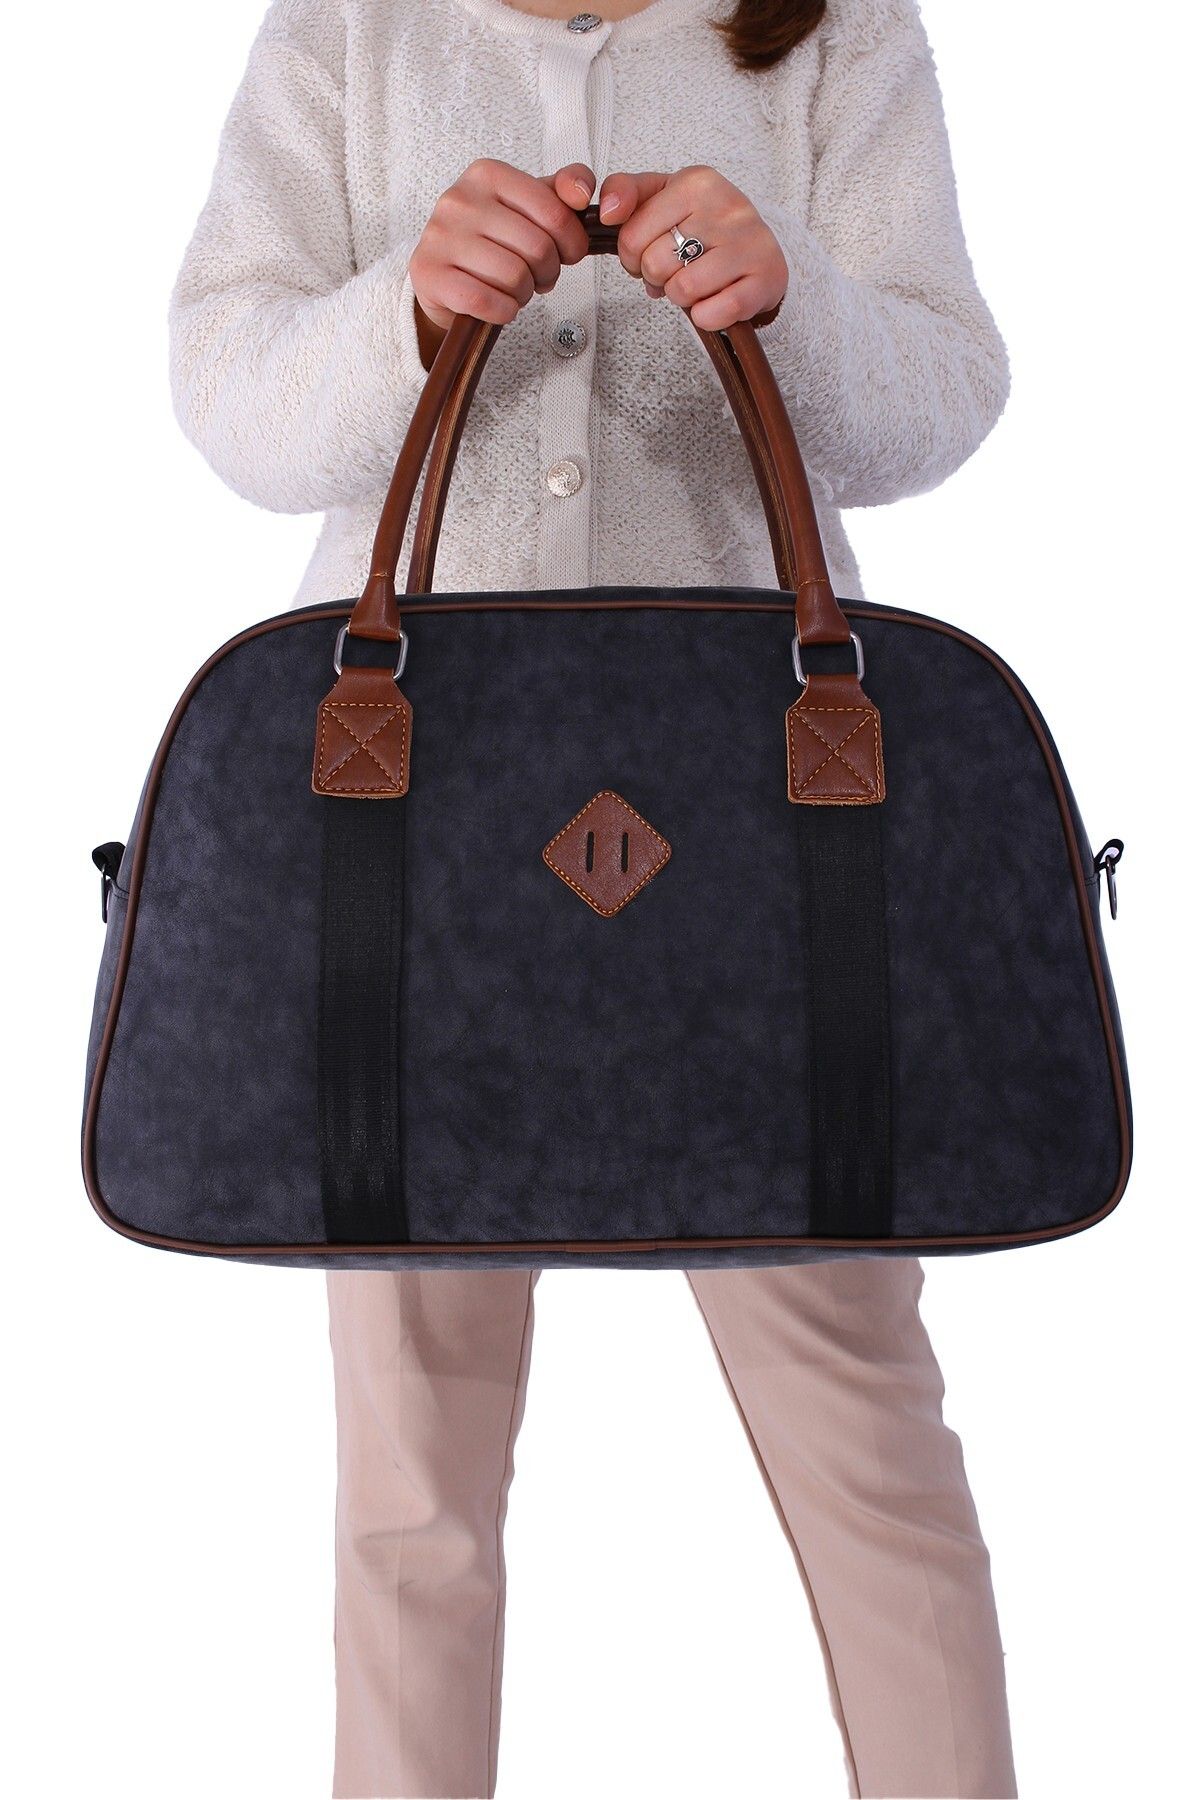 By Hakan GK25 klasik seyahat valizi spor hastane çantası el ve omuz annebebek çantası kabin boy hostes valiz